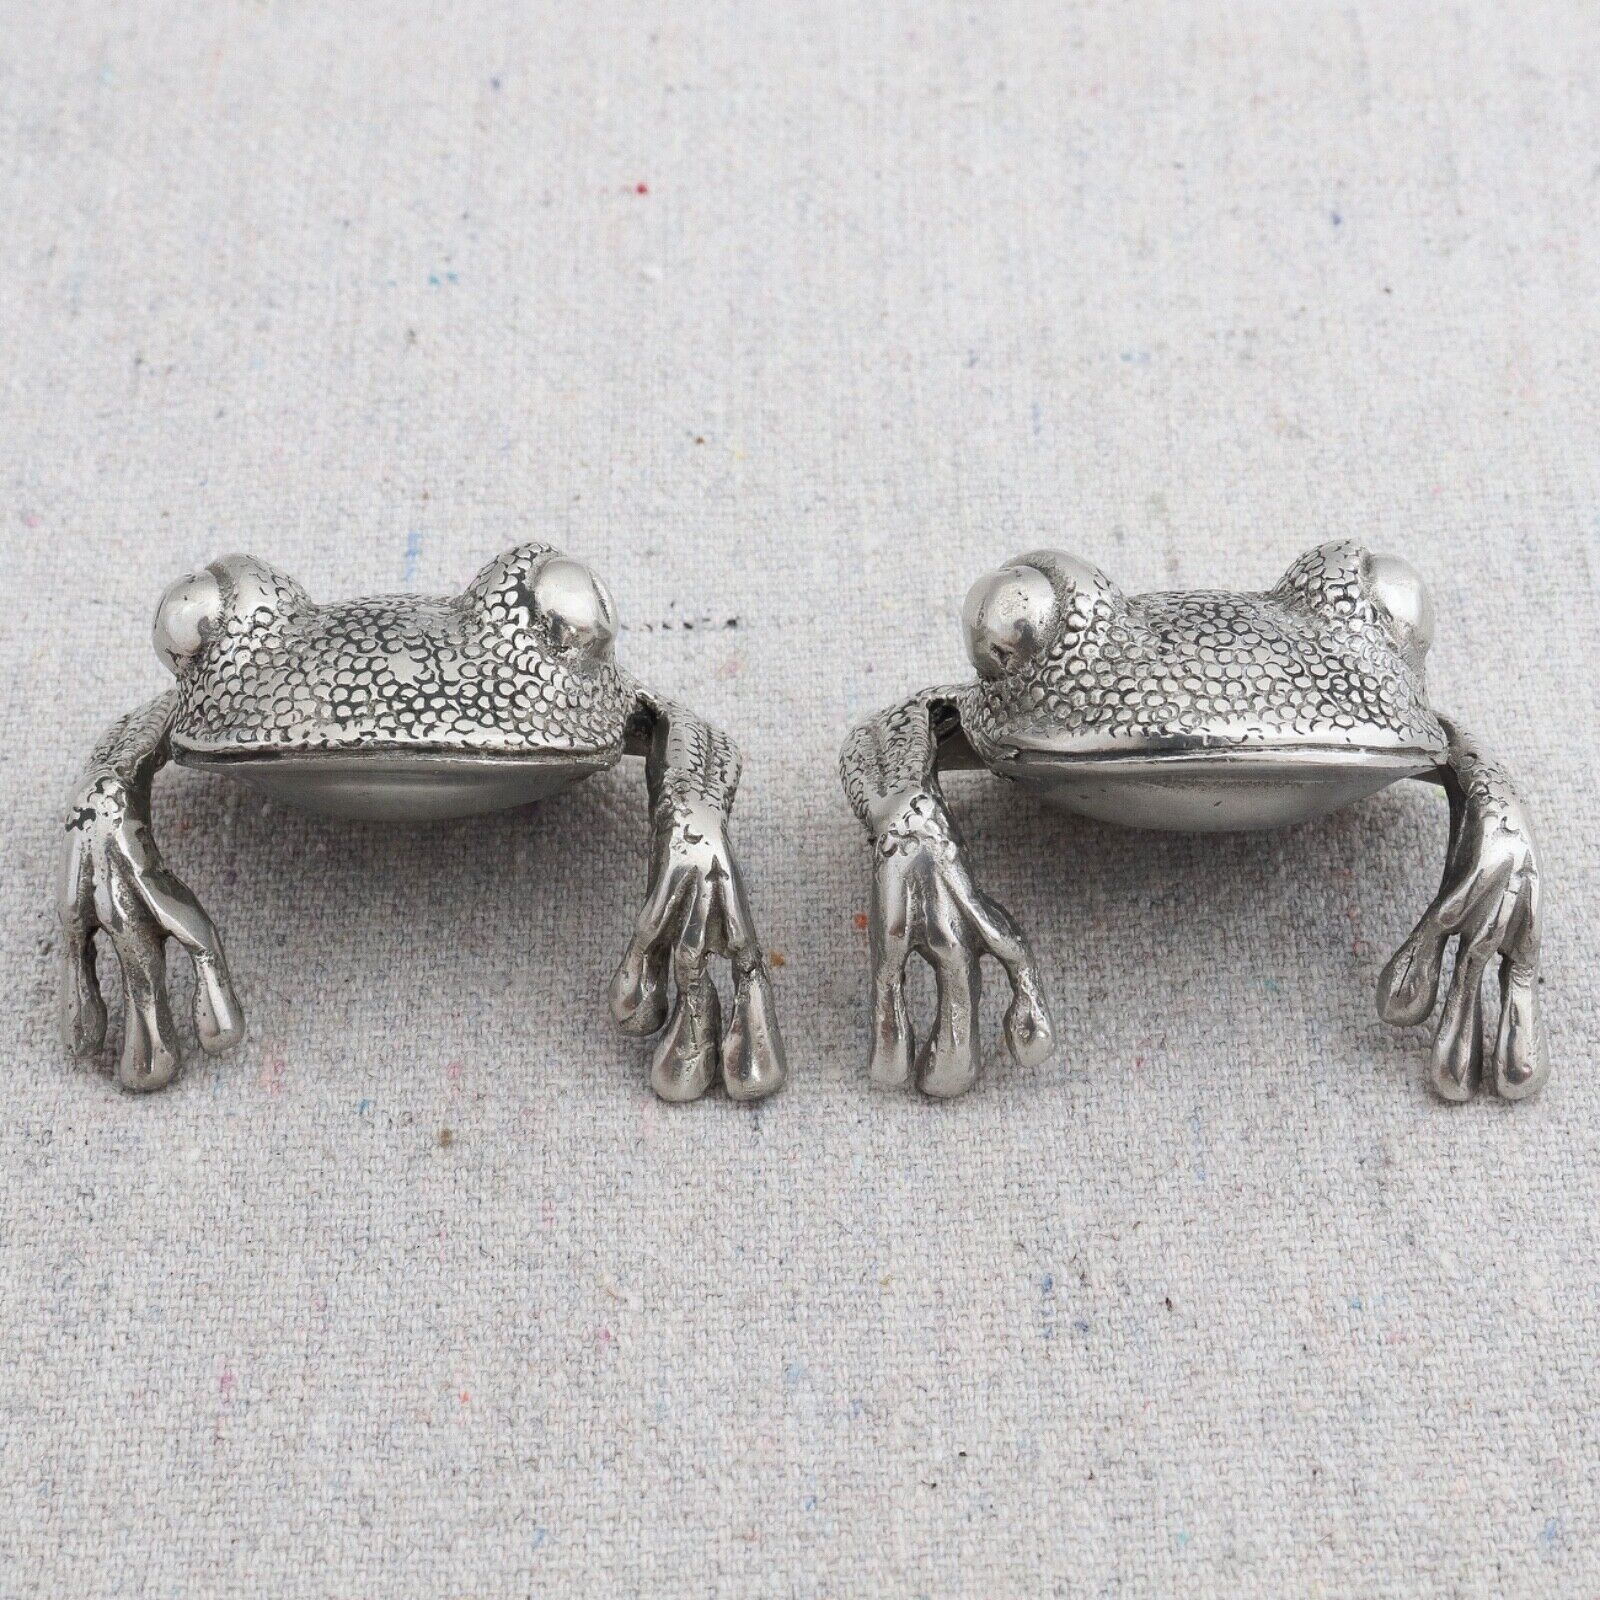 2 Pewter Frog Chopstick Knife Rests Shelf Sitters Place Card Holder Napkin Ring